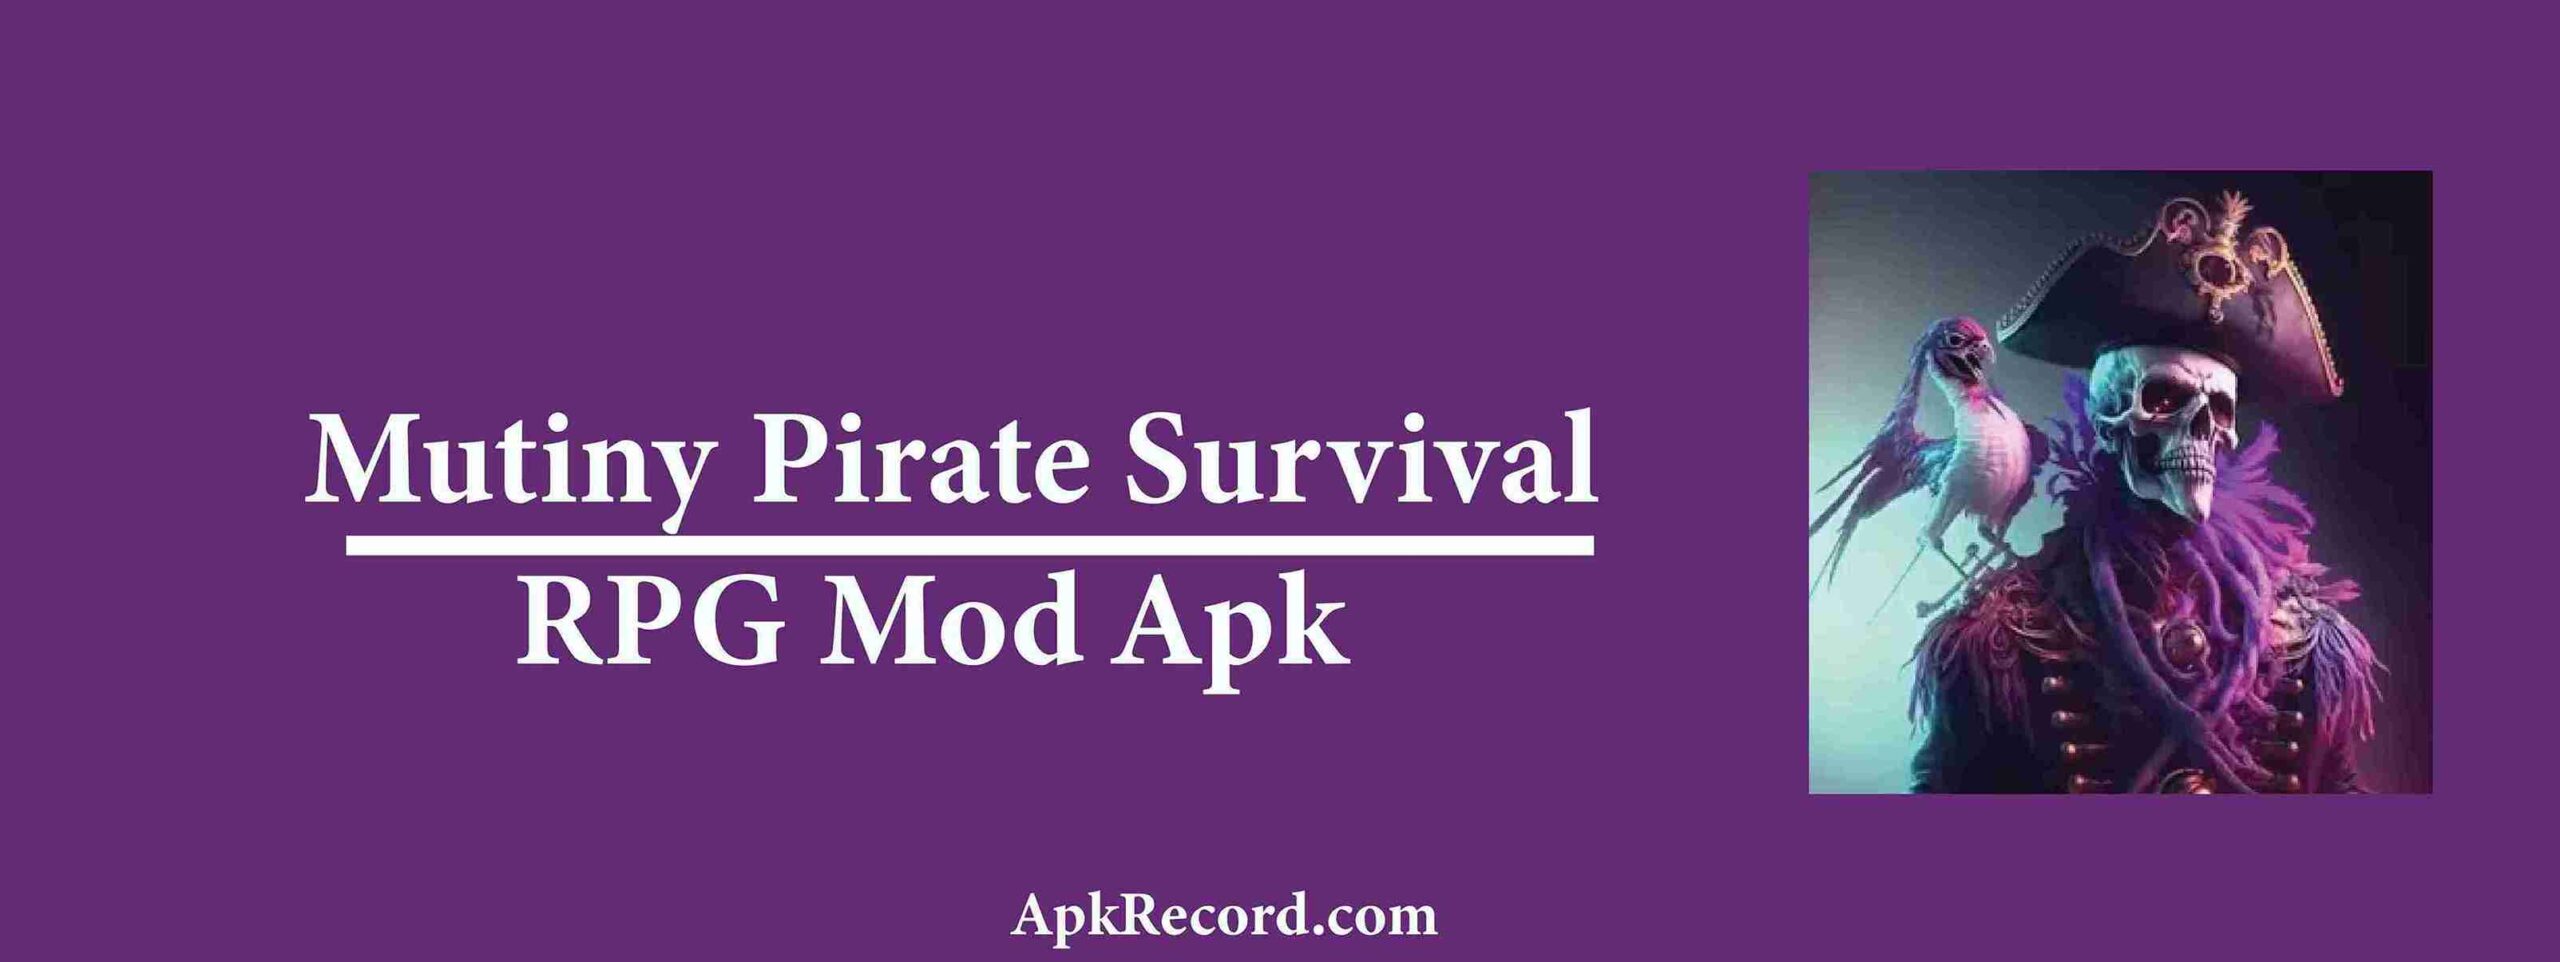 Mutiny Pirate Survival RPG Mod Apk V0.48.4